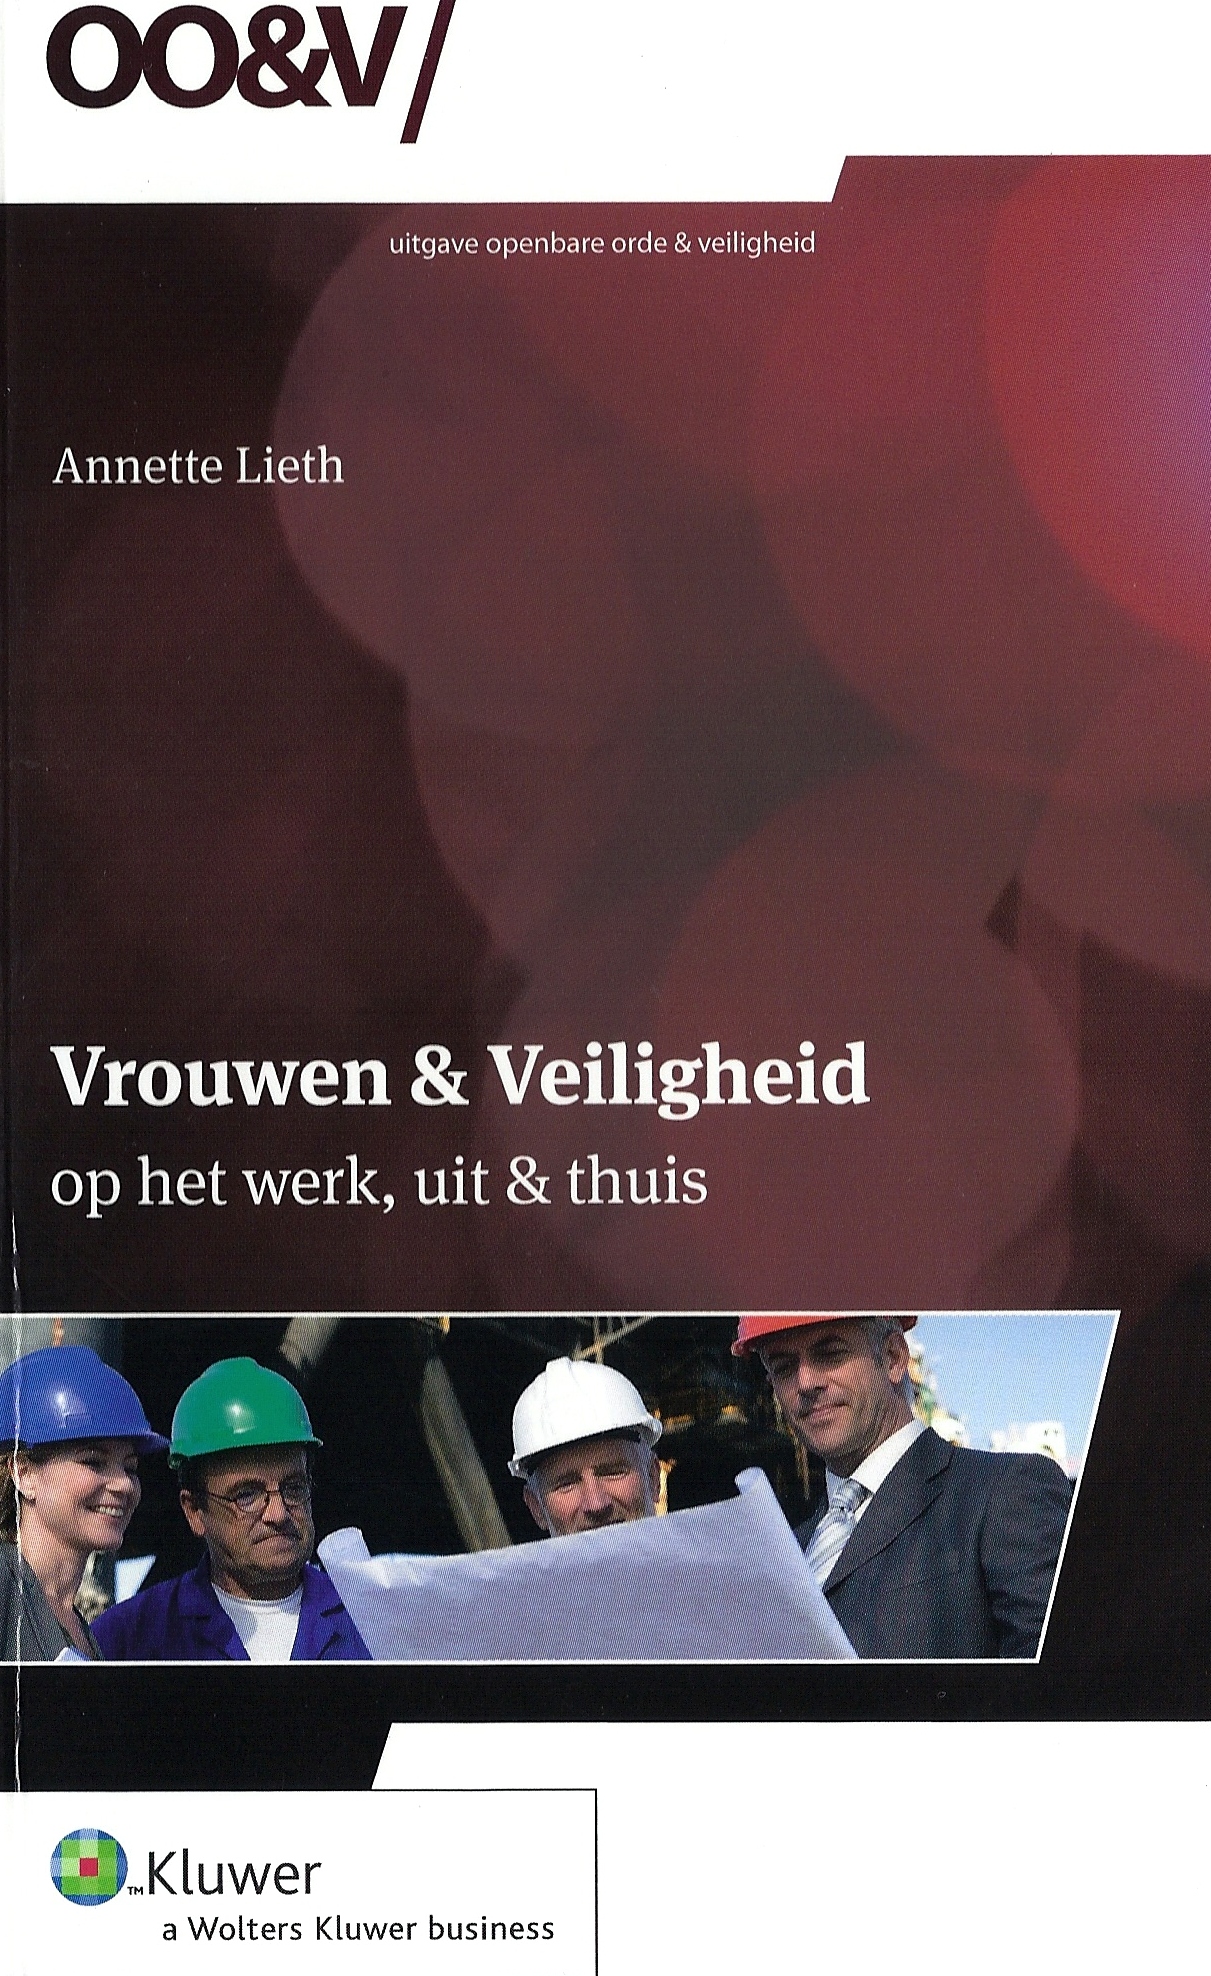 handboek voor Kluwer: Vrouwen & Veiligheid, op het werk, uit en thuis - 2009